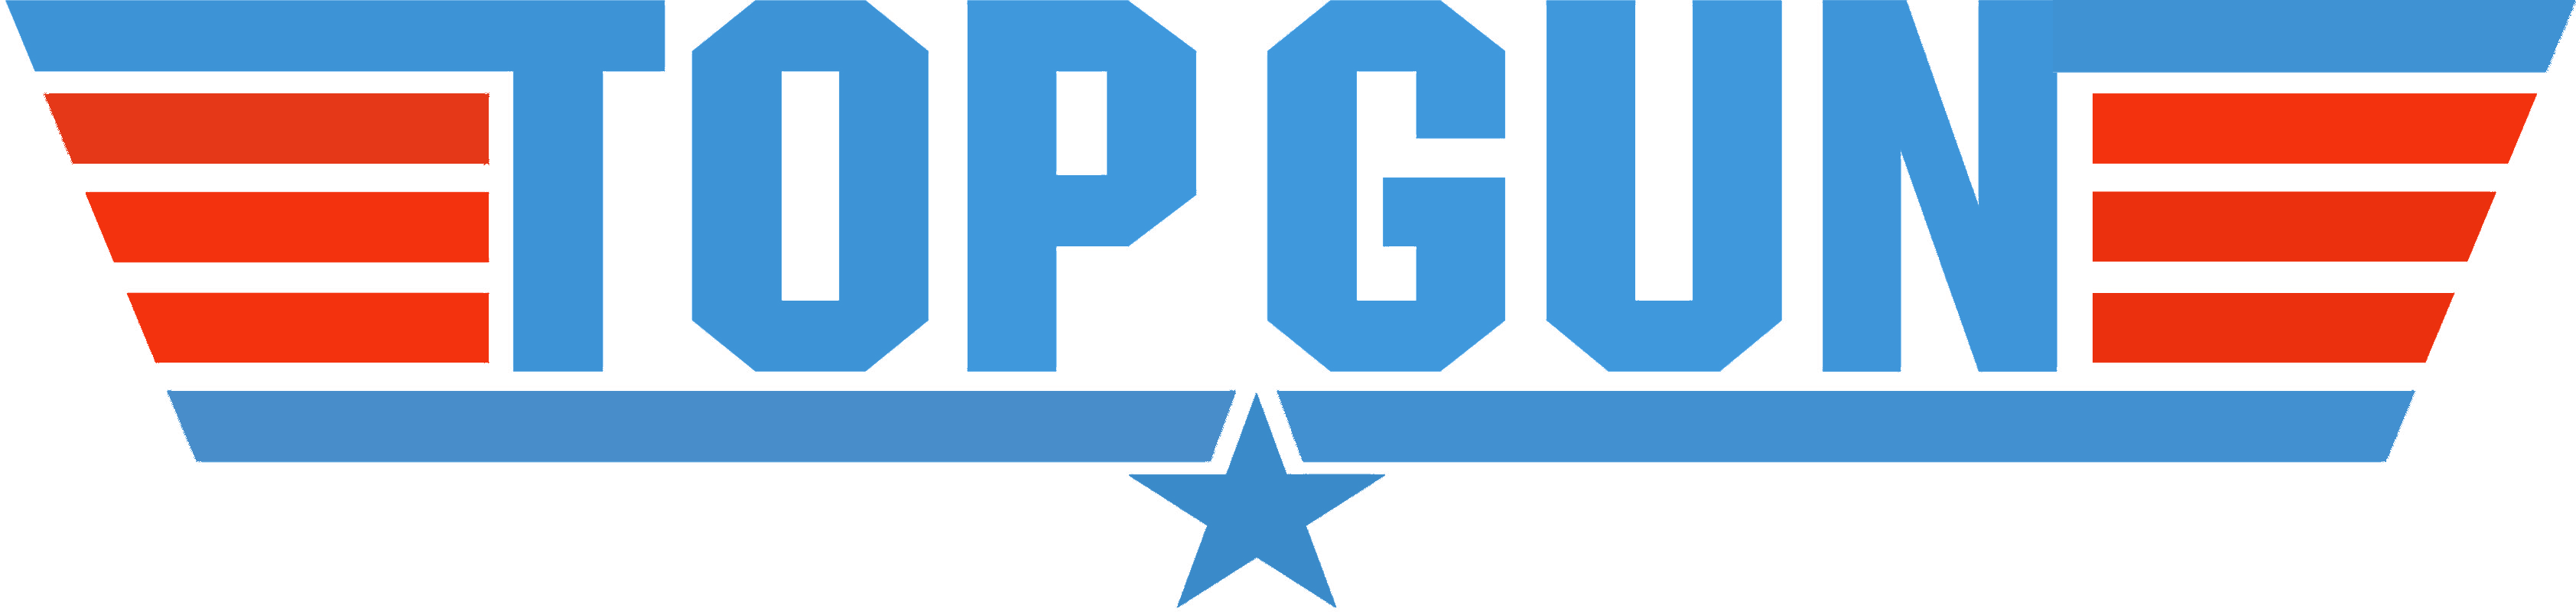 Top Gun Png - Top Gun Logo Png (3368x800), Png Download